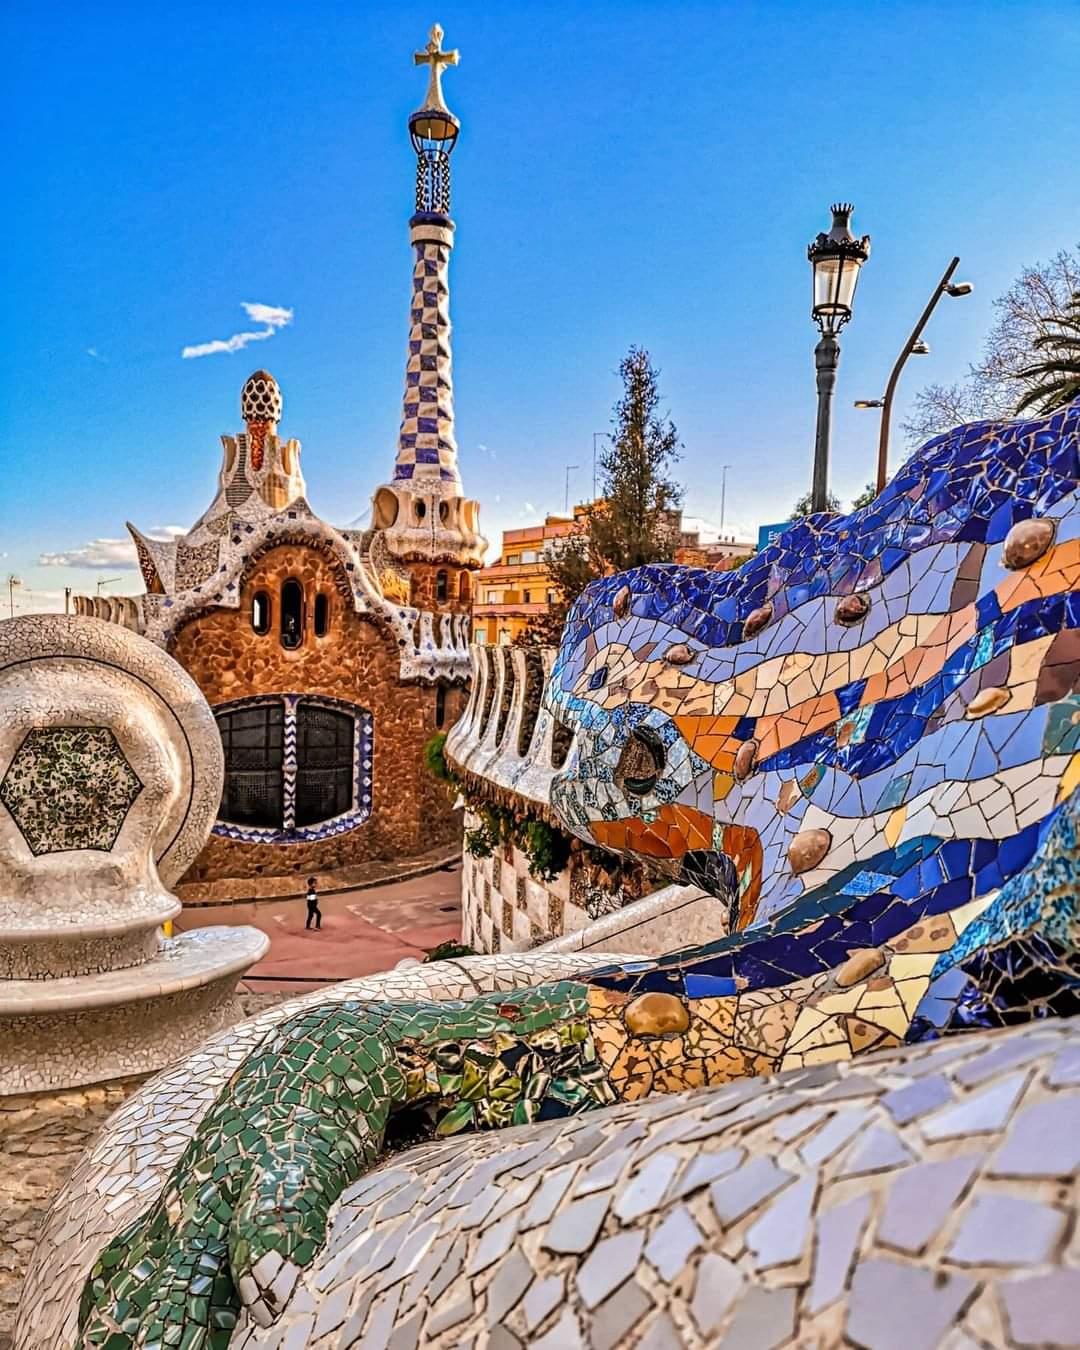 Maripon 世界遺産 アントニ ガウディの作品群 のひとつ 彩り鮮やかな破砕タイルをちりばめた建築物が並び そこはまるで童話の世界 スペインの グエル公園 T Co P0dshsjvkc Twitter